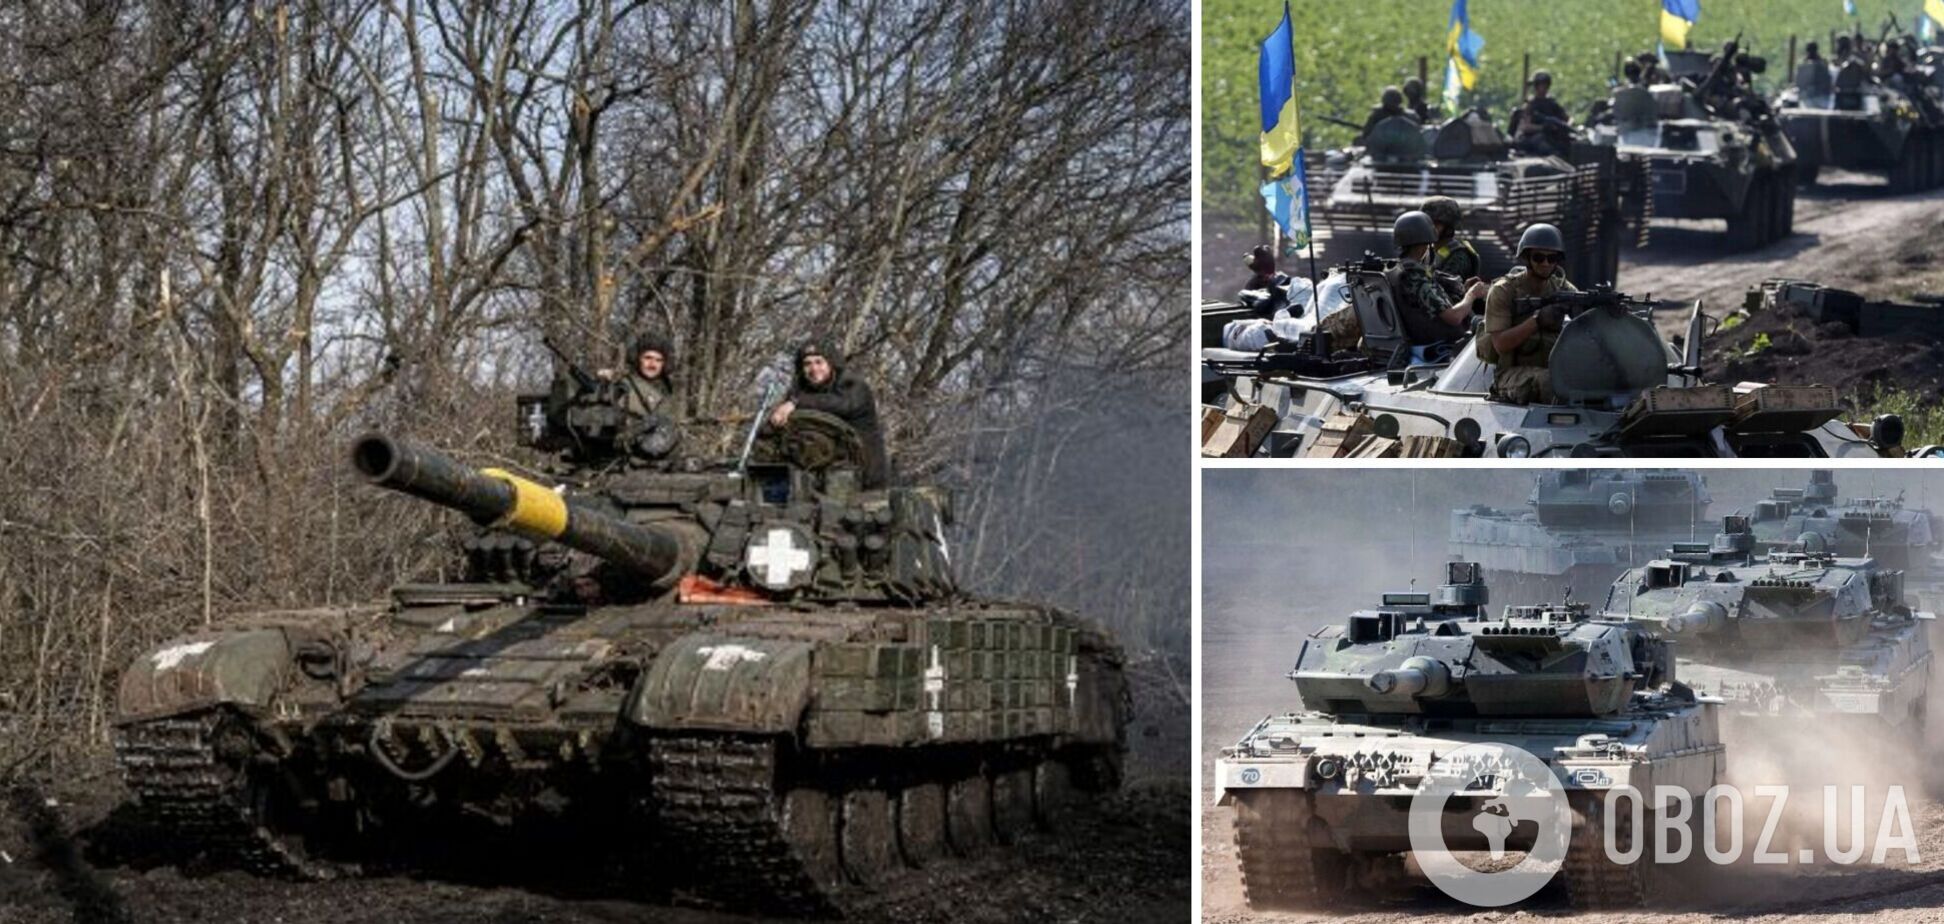 В ближайшее время погода позволит ВСУ использовать танки на востоке Украины, – представитель Генштаба Эстонии